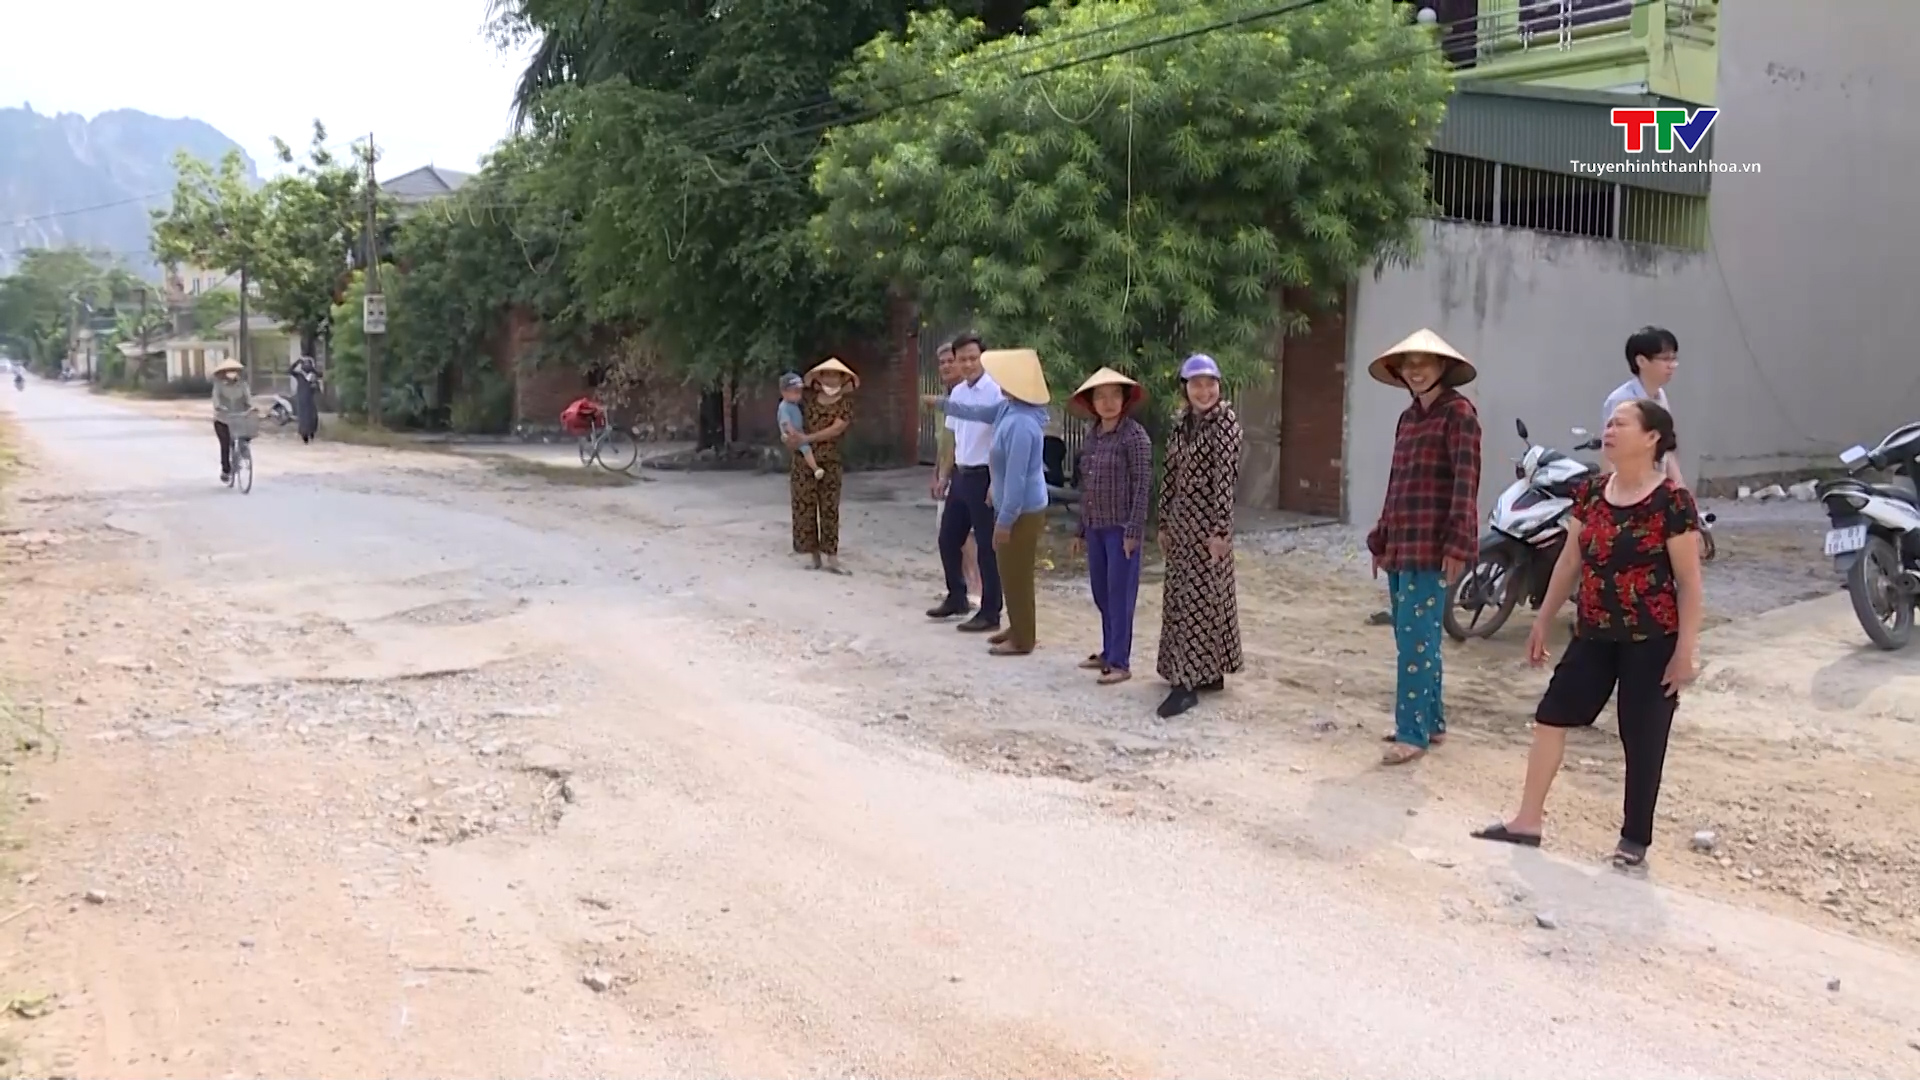 Đường xuống cấp gây ảnh hưởng đời sống người dân tại phường An Hưng, thành phố Thanh Hóa - Ảnh 2.